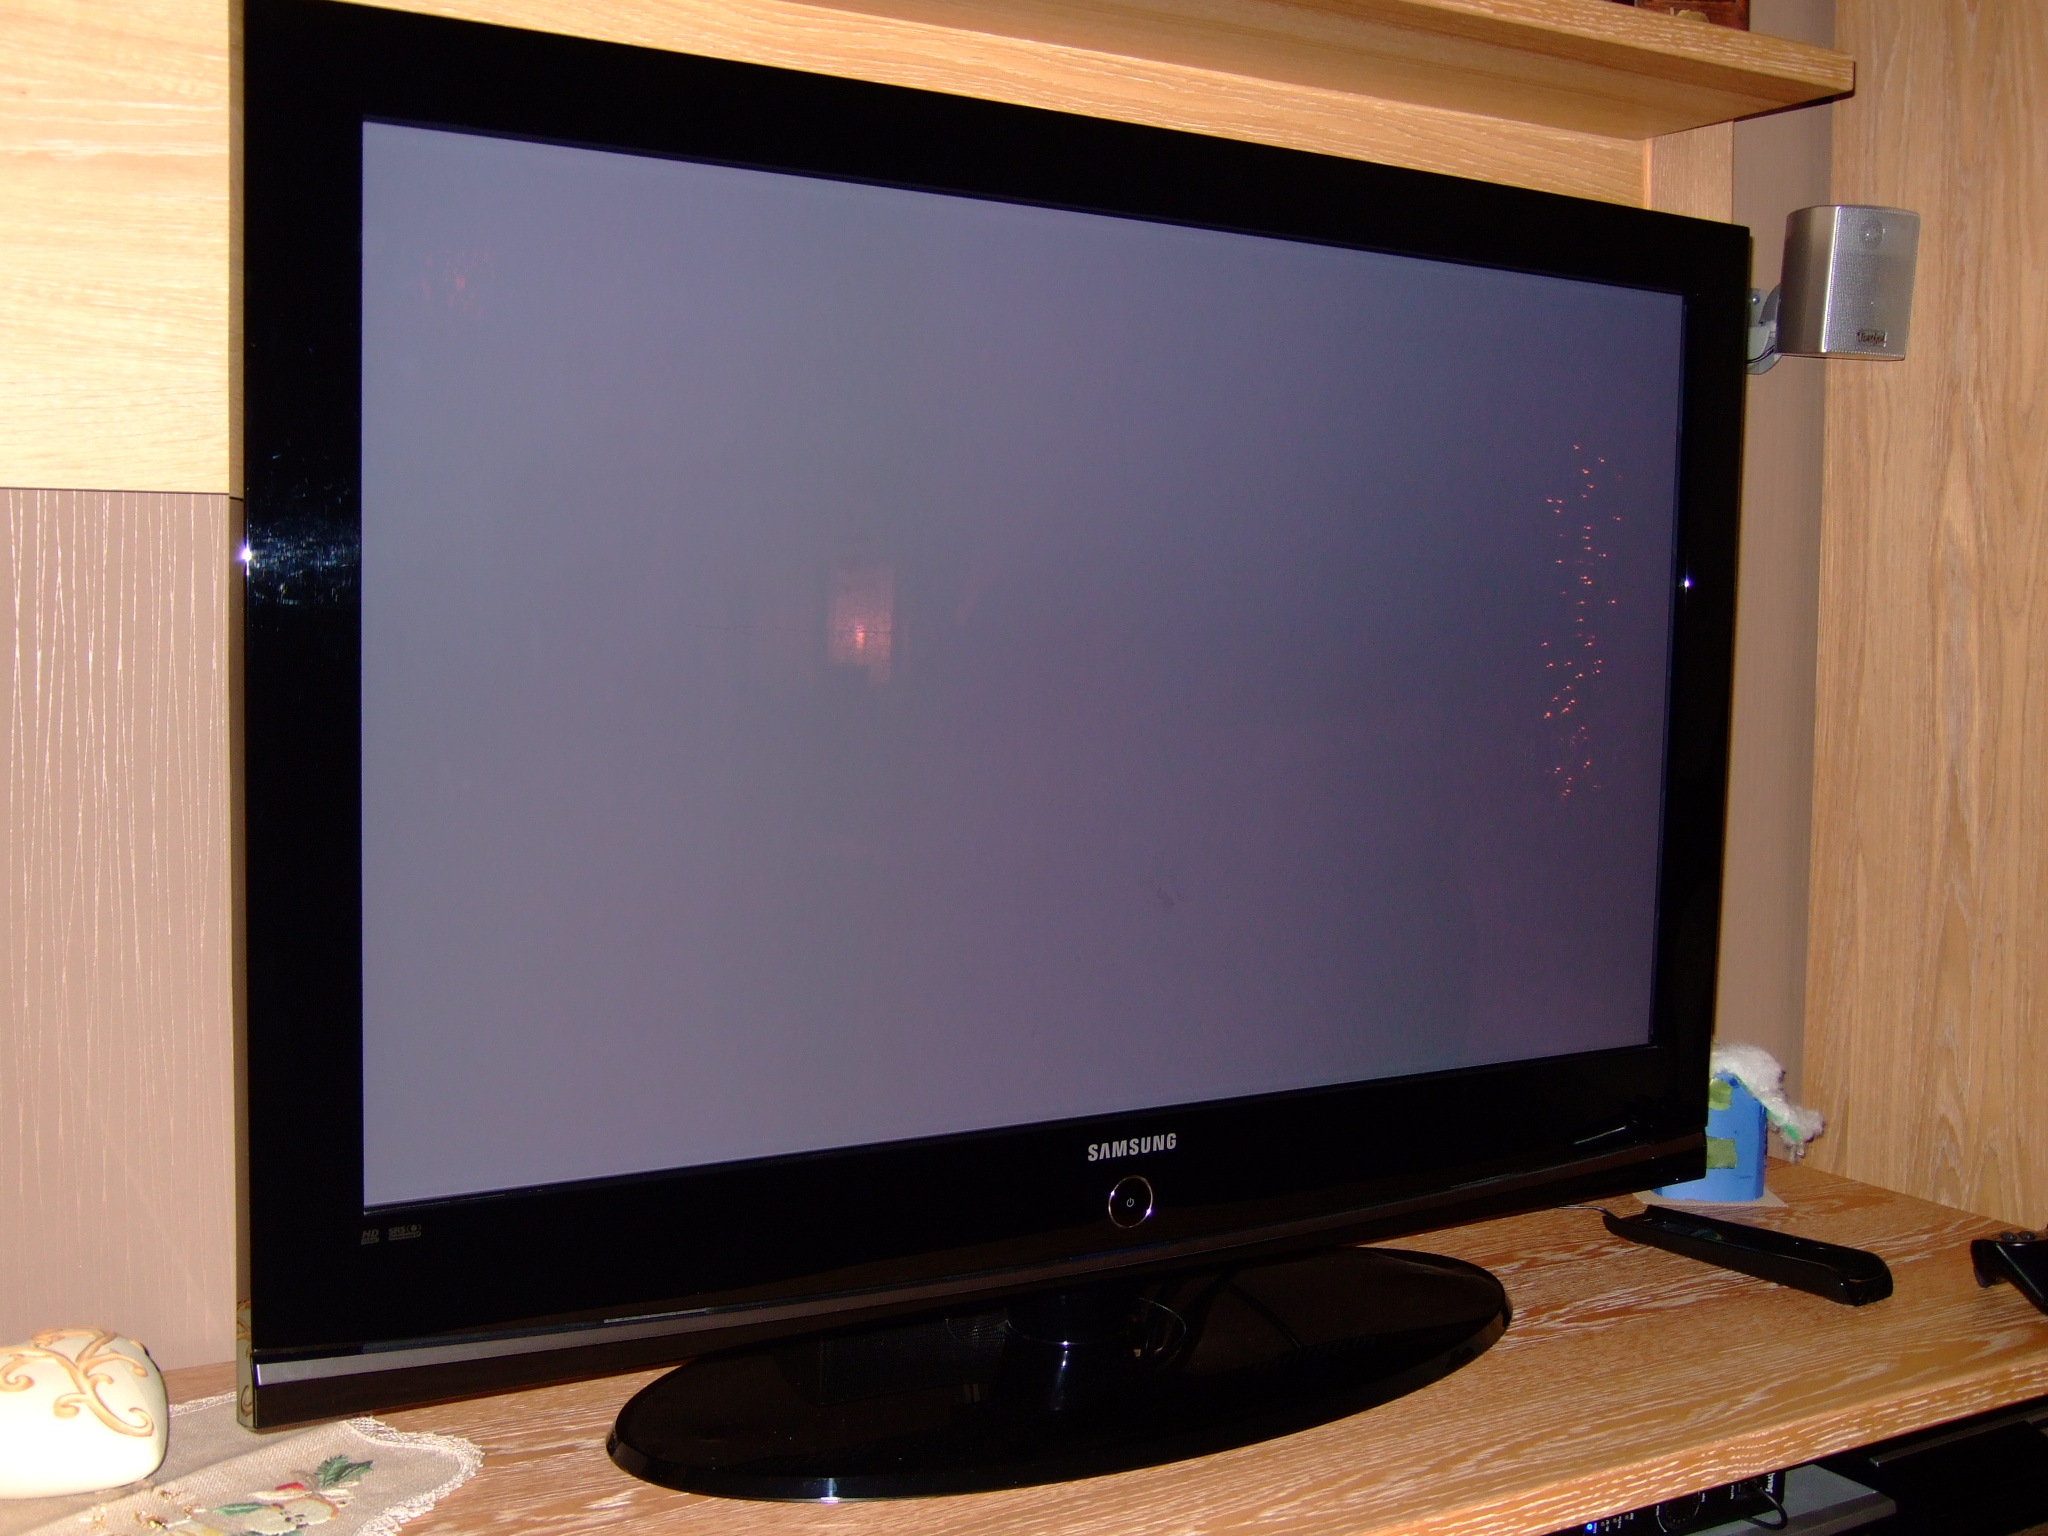 Куплю рабочий телевизор. Телевизор Samsung плазма 42 дюйма. Телевизор Samsung диагональ 106 см. Samsung le-32c350. Телевизор самсунг модель ps42a410c1 плазменный.